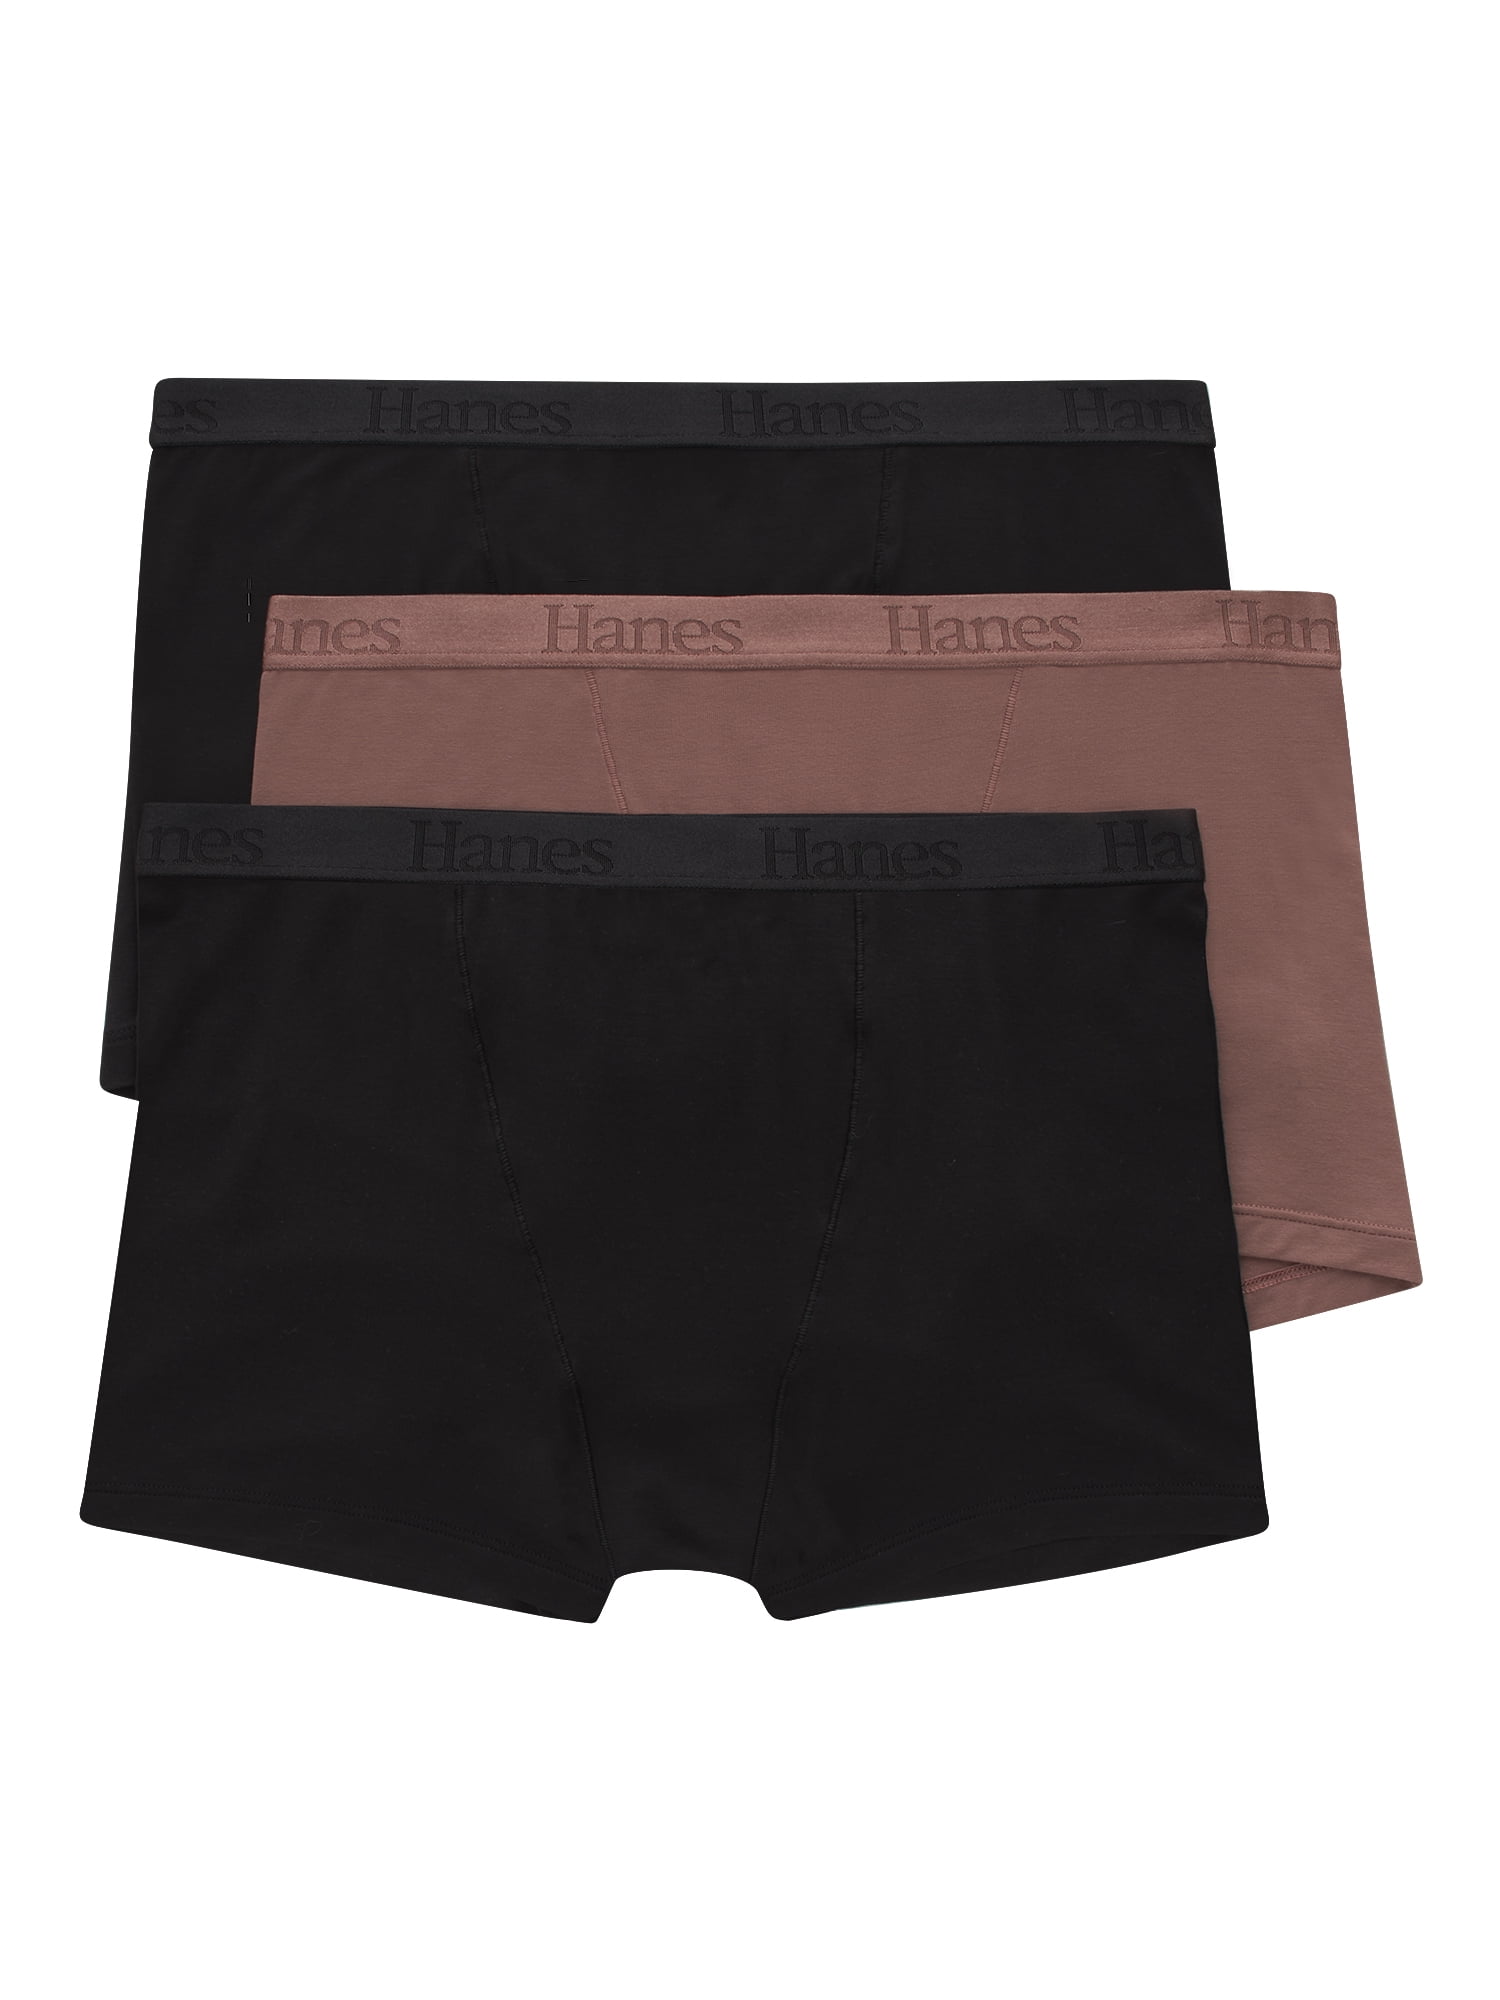 Hanes X-Temp Big Men's Underwear BOXER BRIEFS 3-Pack Black 